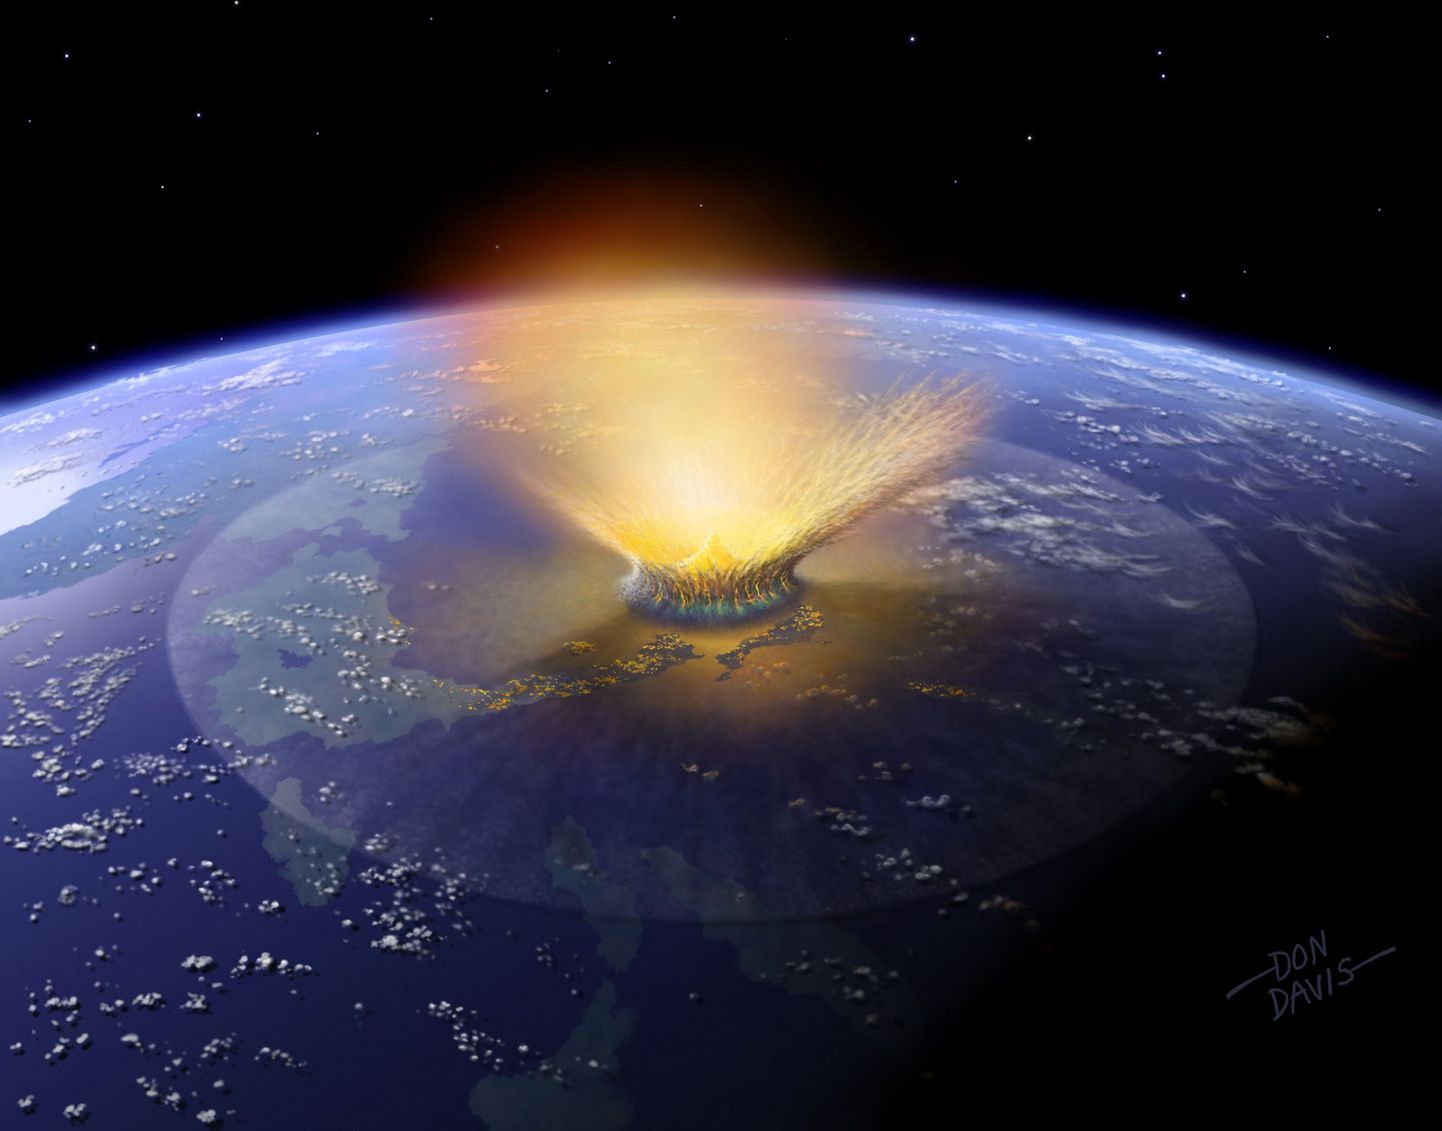 Hiidsisalikud hukkusid 1000 aastat kestnud meteoriidisaju tagajärjel?